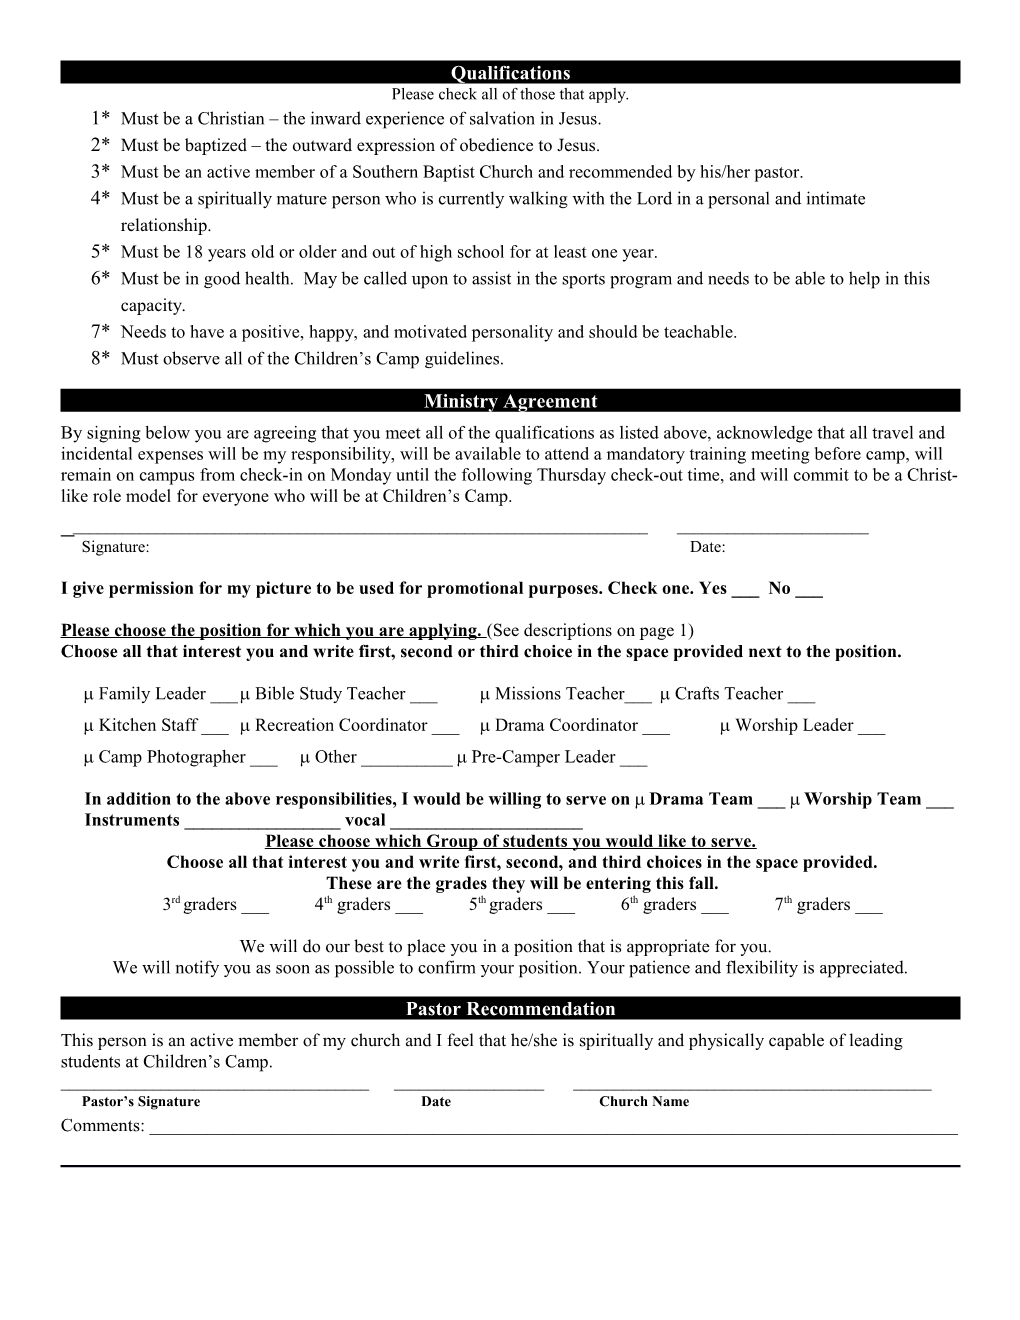 Adult Registration & Medical Release Form